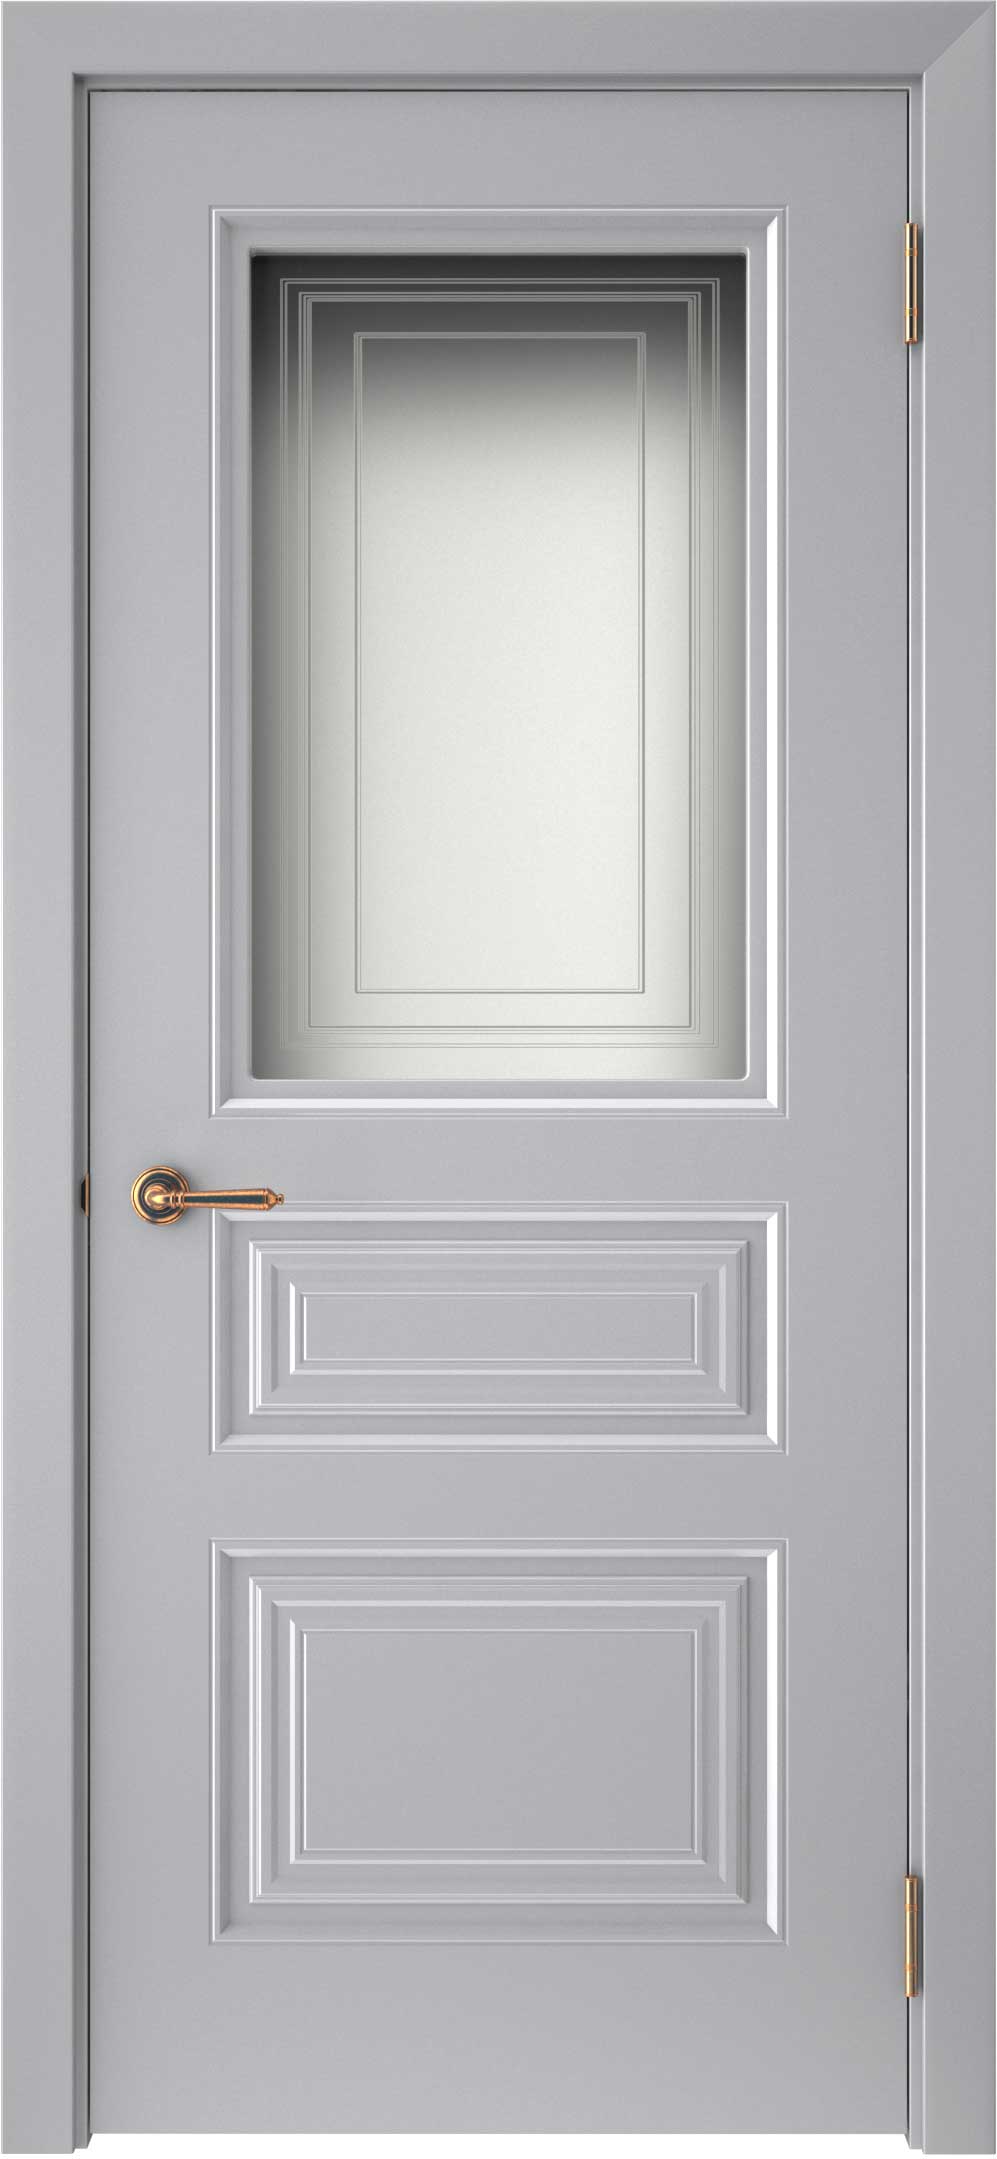 Двери крашеные (Эмаль) ТЕКОНА Смальта-44 со стеклом Серый ral размер 200 х 60 см. артикул F0000093313